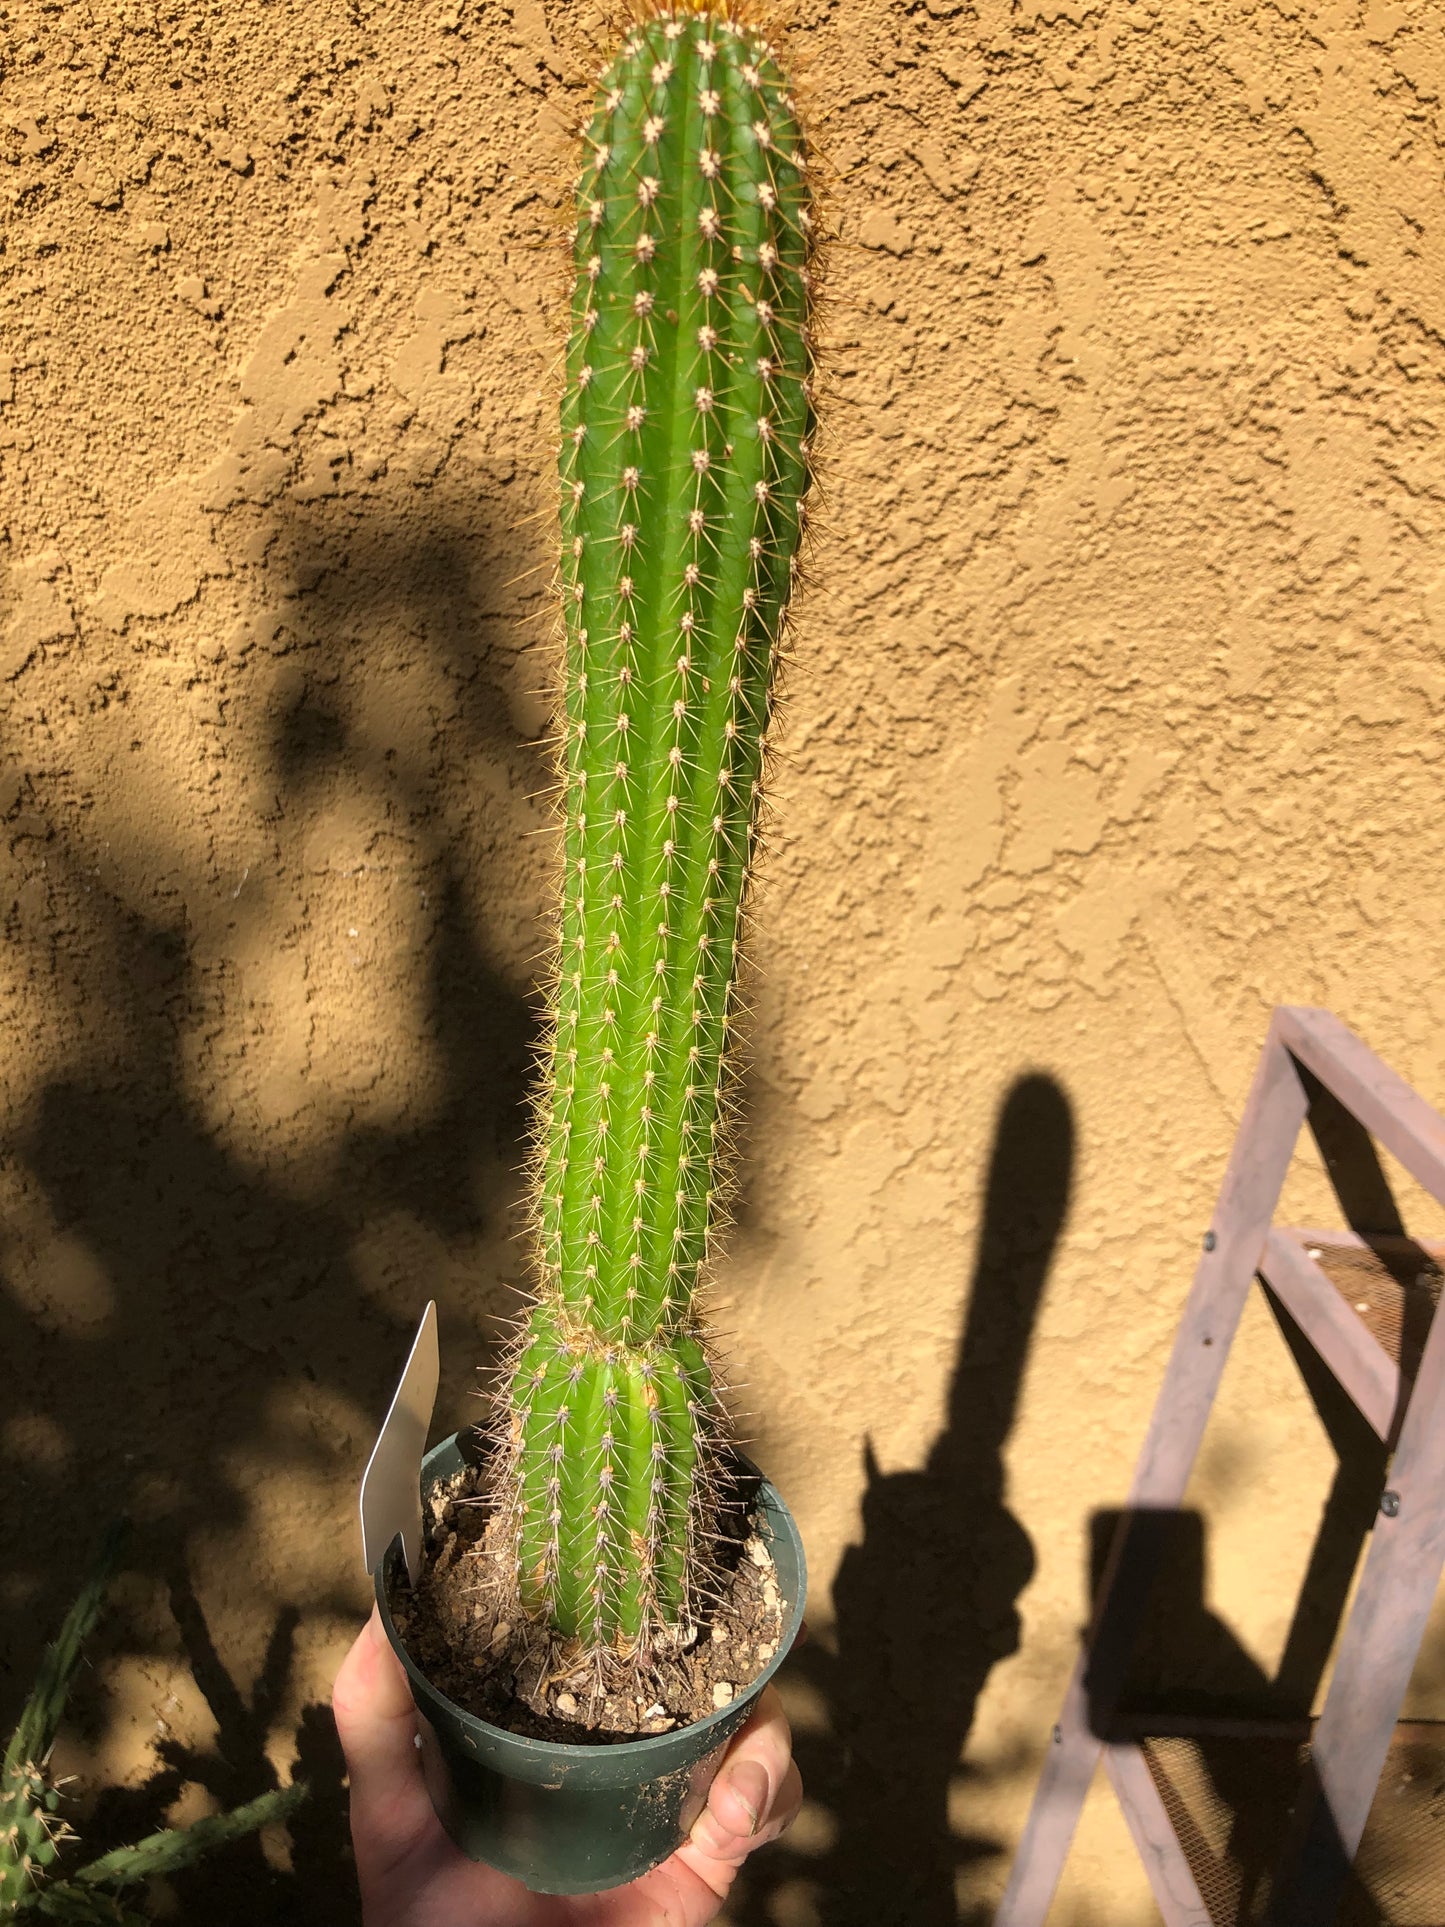 Golden Torch Cactus - Trichocereus spachianus 13" Tall #6W